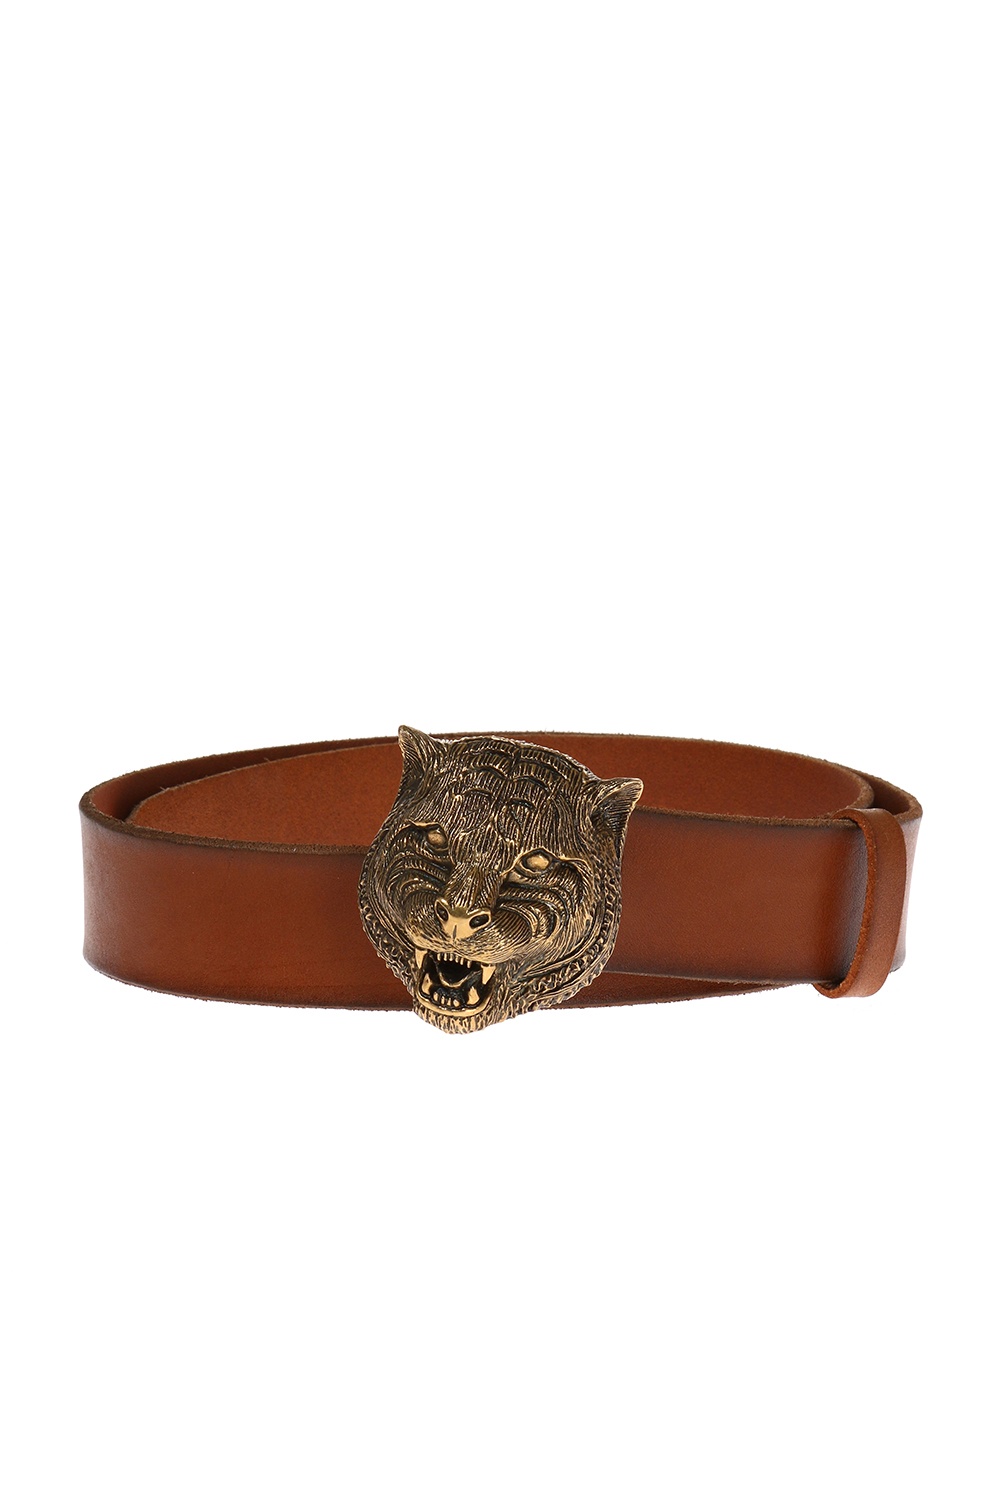 Tiger head belt Gucci - Vitkac US